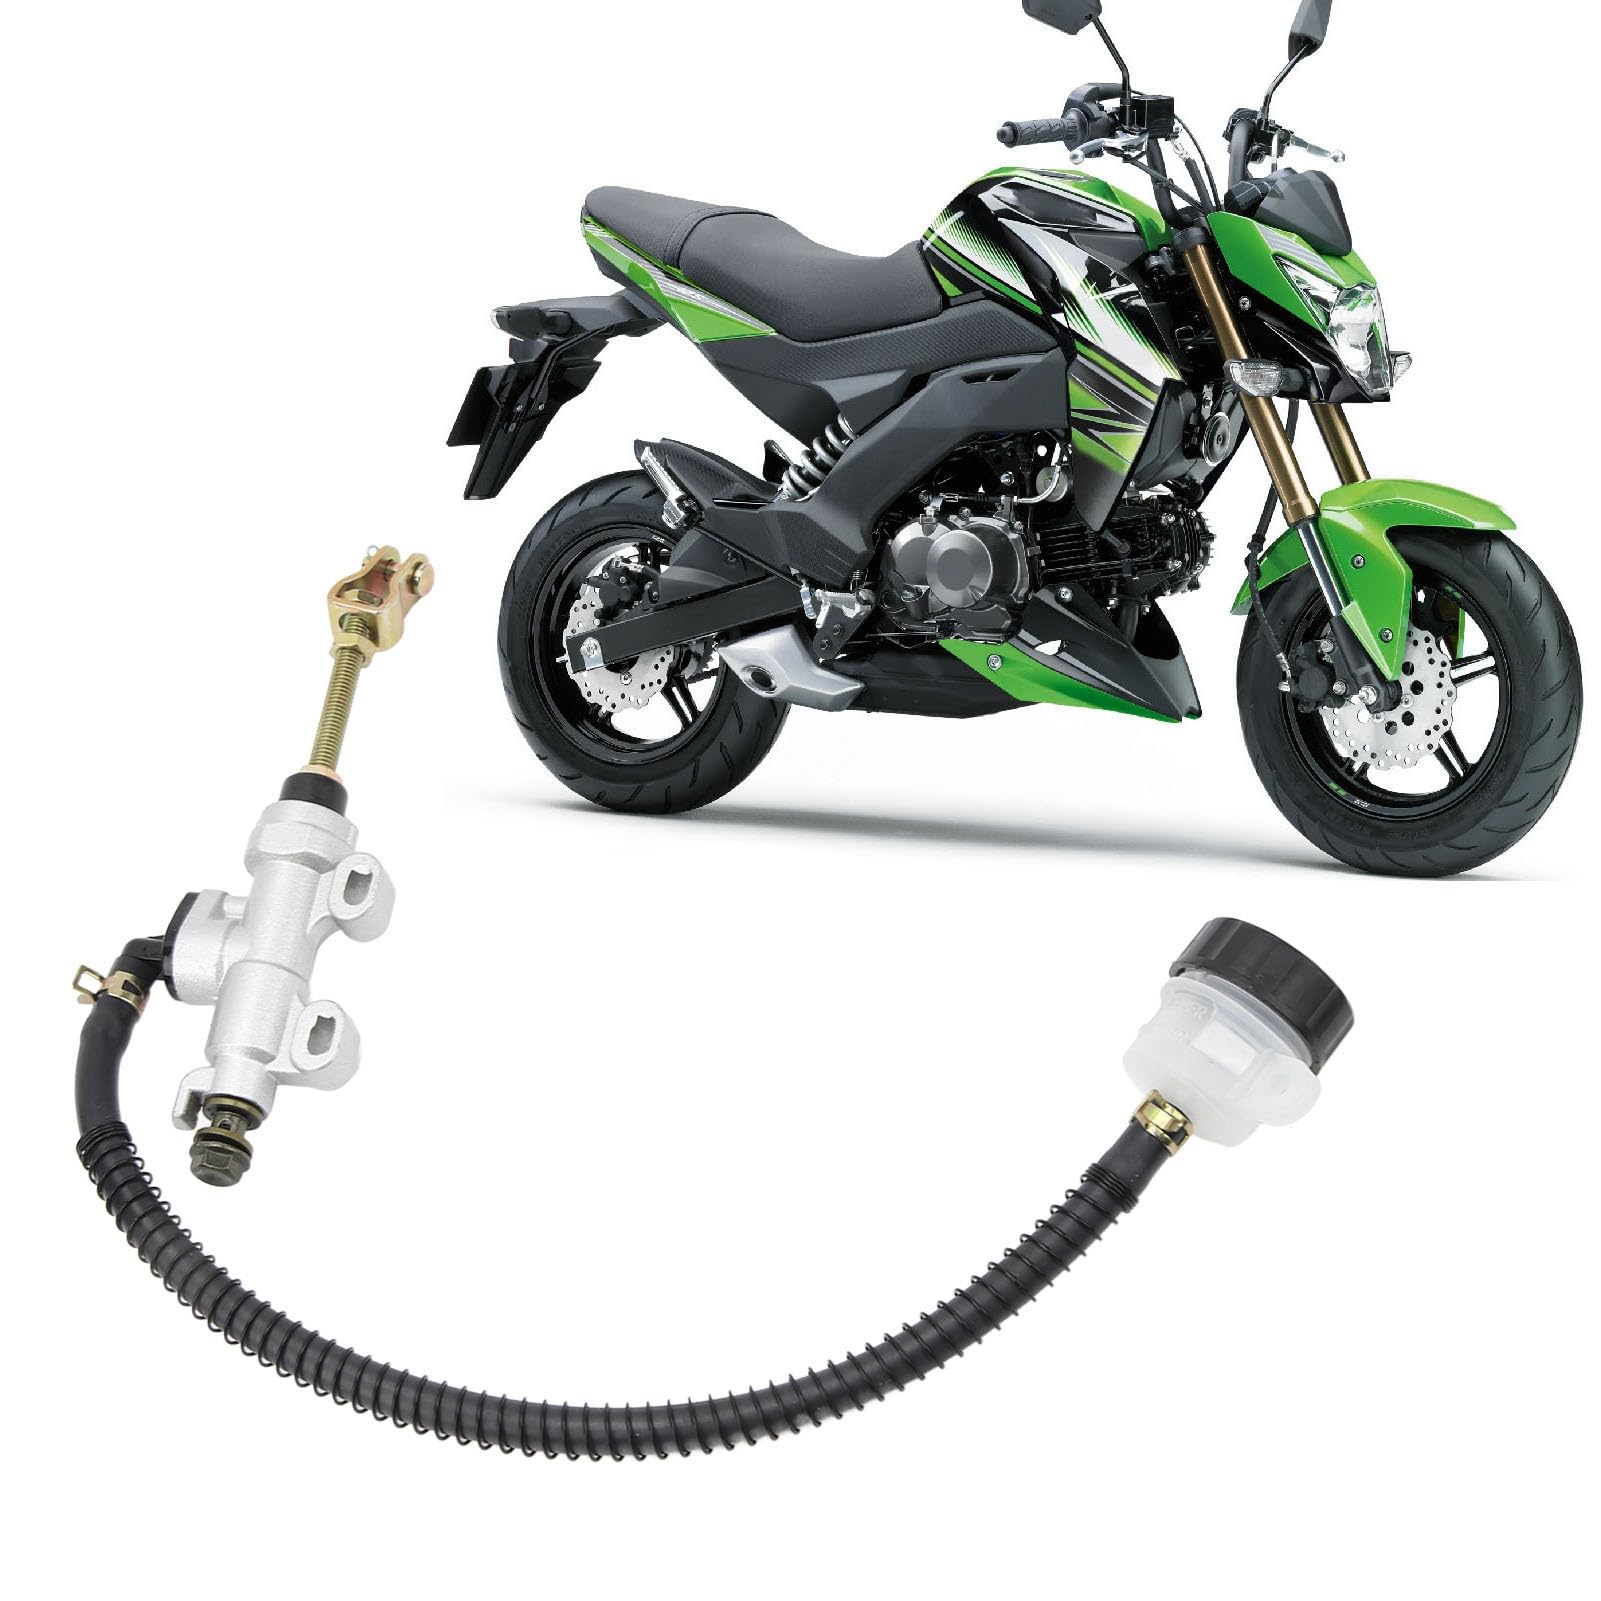 Hauptzylinder für hintere Fußbremse des Motorrads, hydraulische Hauptzylinderpumpe mit Vorratsbehälter für Motorrad-Schmutzfahrrad-ATV(Weiß) von Yosoo Health Gear